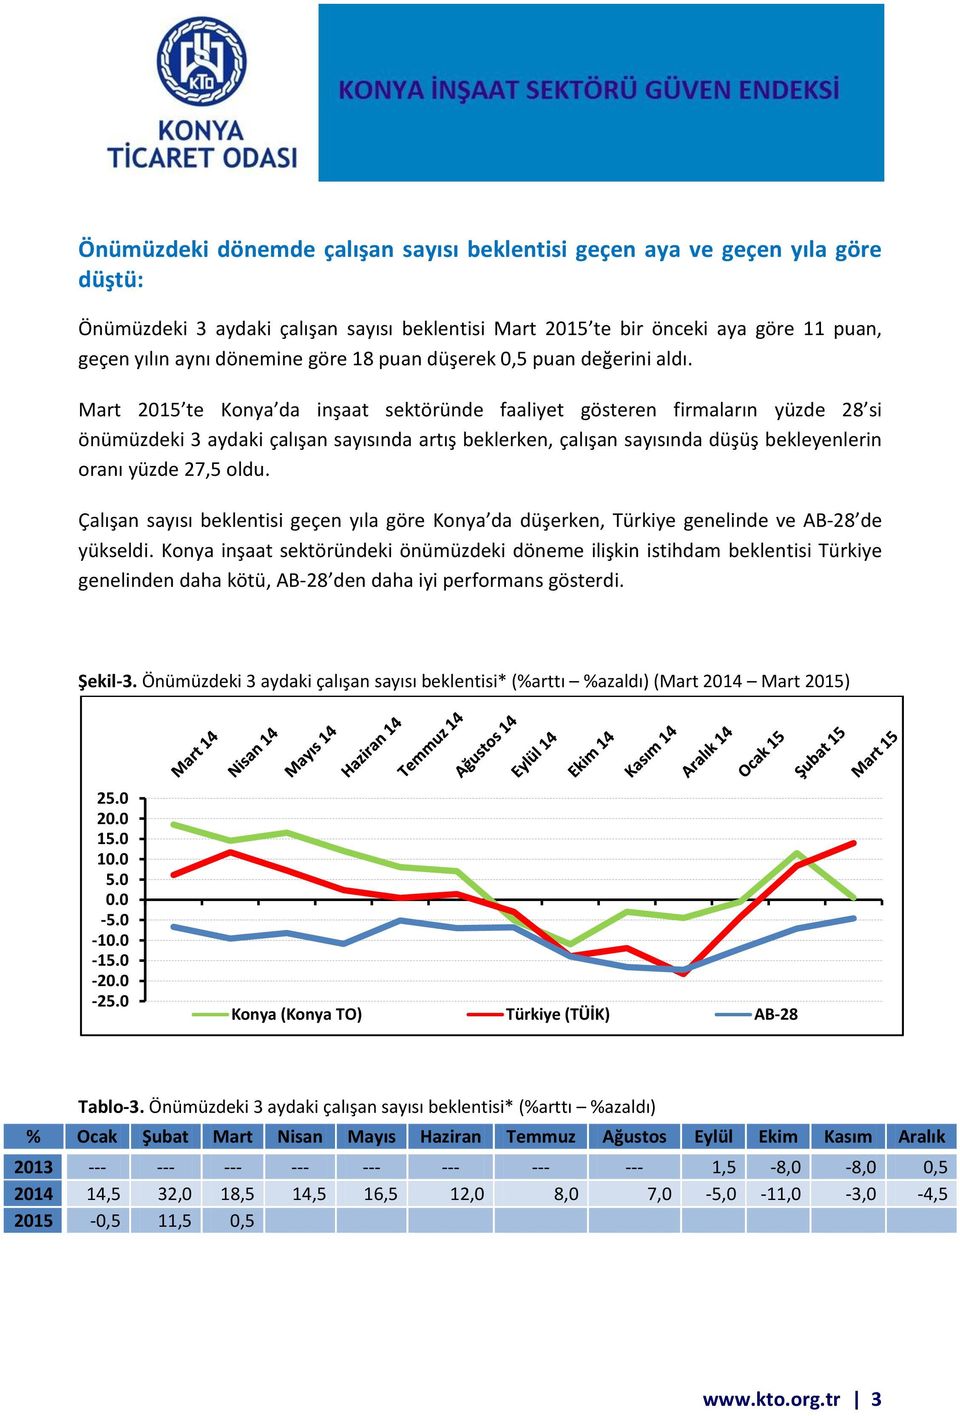 Mart 2015 te Konya da inşaat sektöründe faaliyet gösteren firmaların yüzde 28 si önümüzdeki 3 aydaki çalışan sayısında artış beklerken, çalışan sayısında düşüş bekleyenlerin oranı yüzde 27,5 oldu.